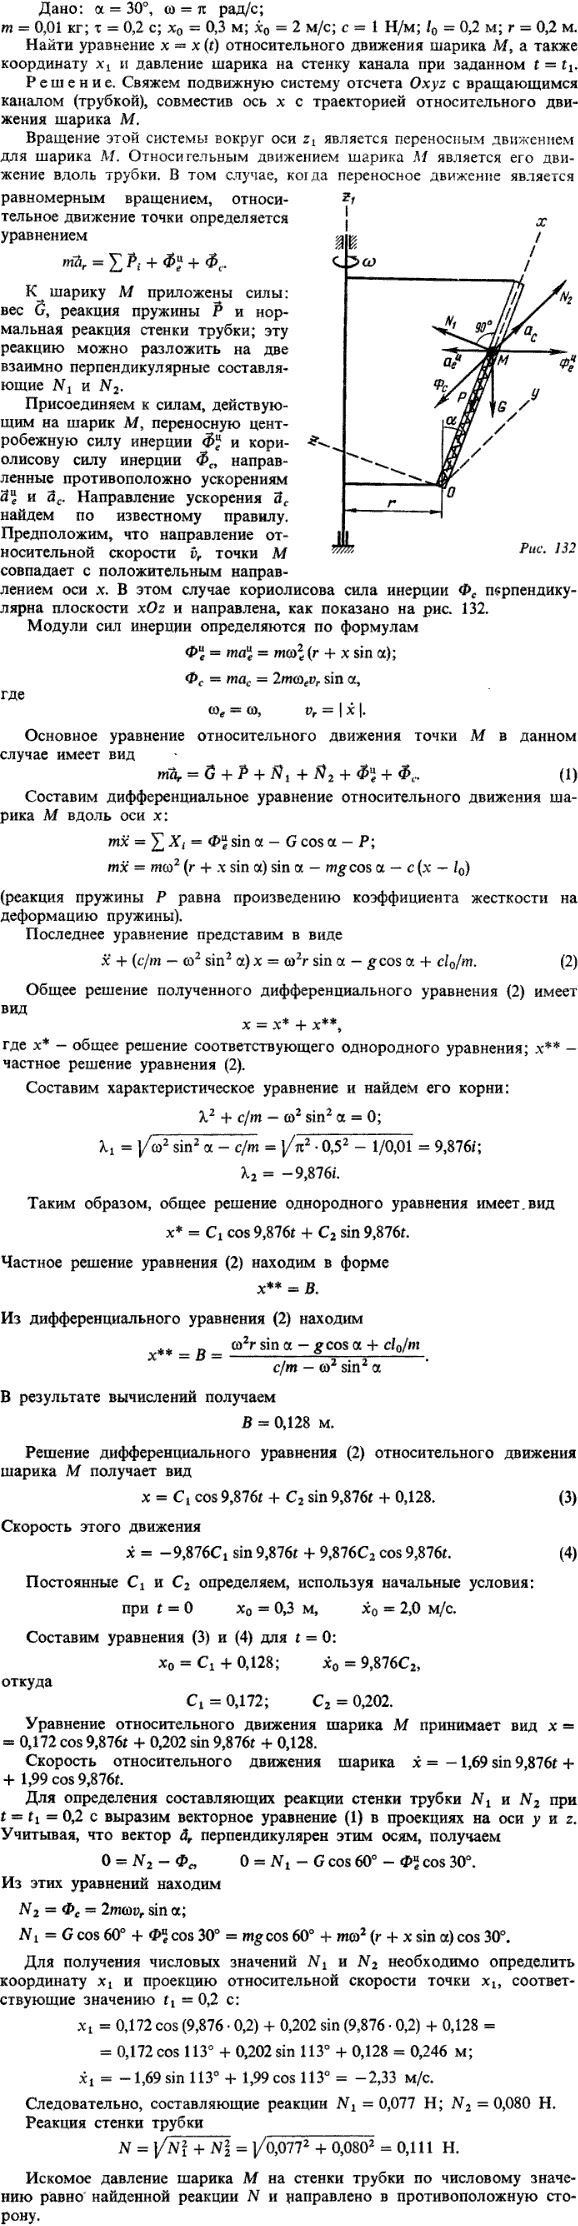 Д4 пример 1 рис. 132). Дано: α=30°, ω=п рад/с; m=0,01 кг; т=0,2 c; x0=0,3 м; x\\\'0=2 м/с; c=1 Н/м; l0=0,2 м; r=0,2 м. Найти уравнение x=x (t